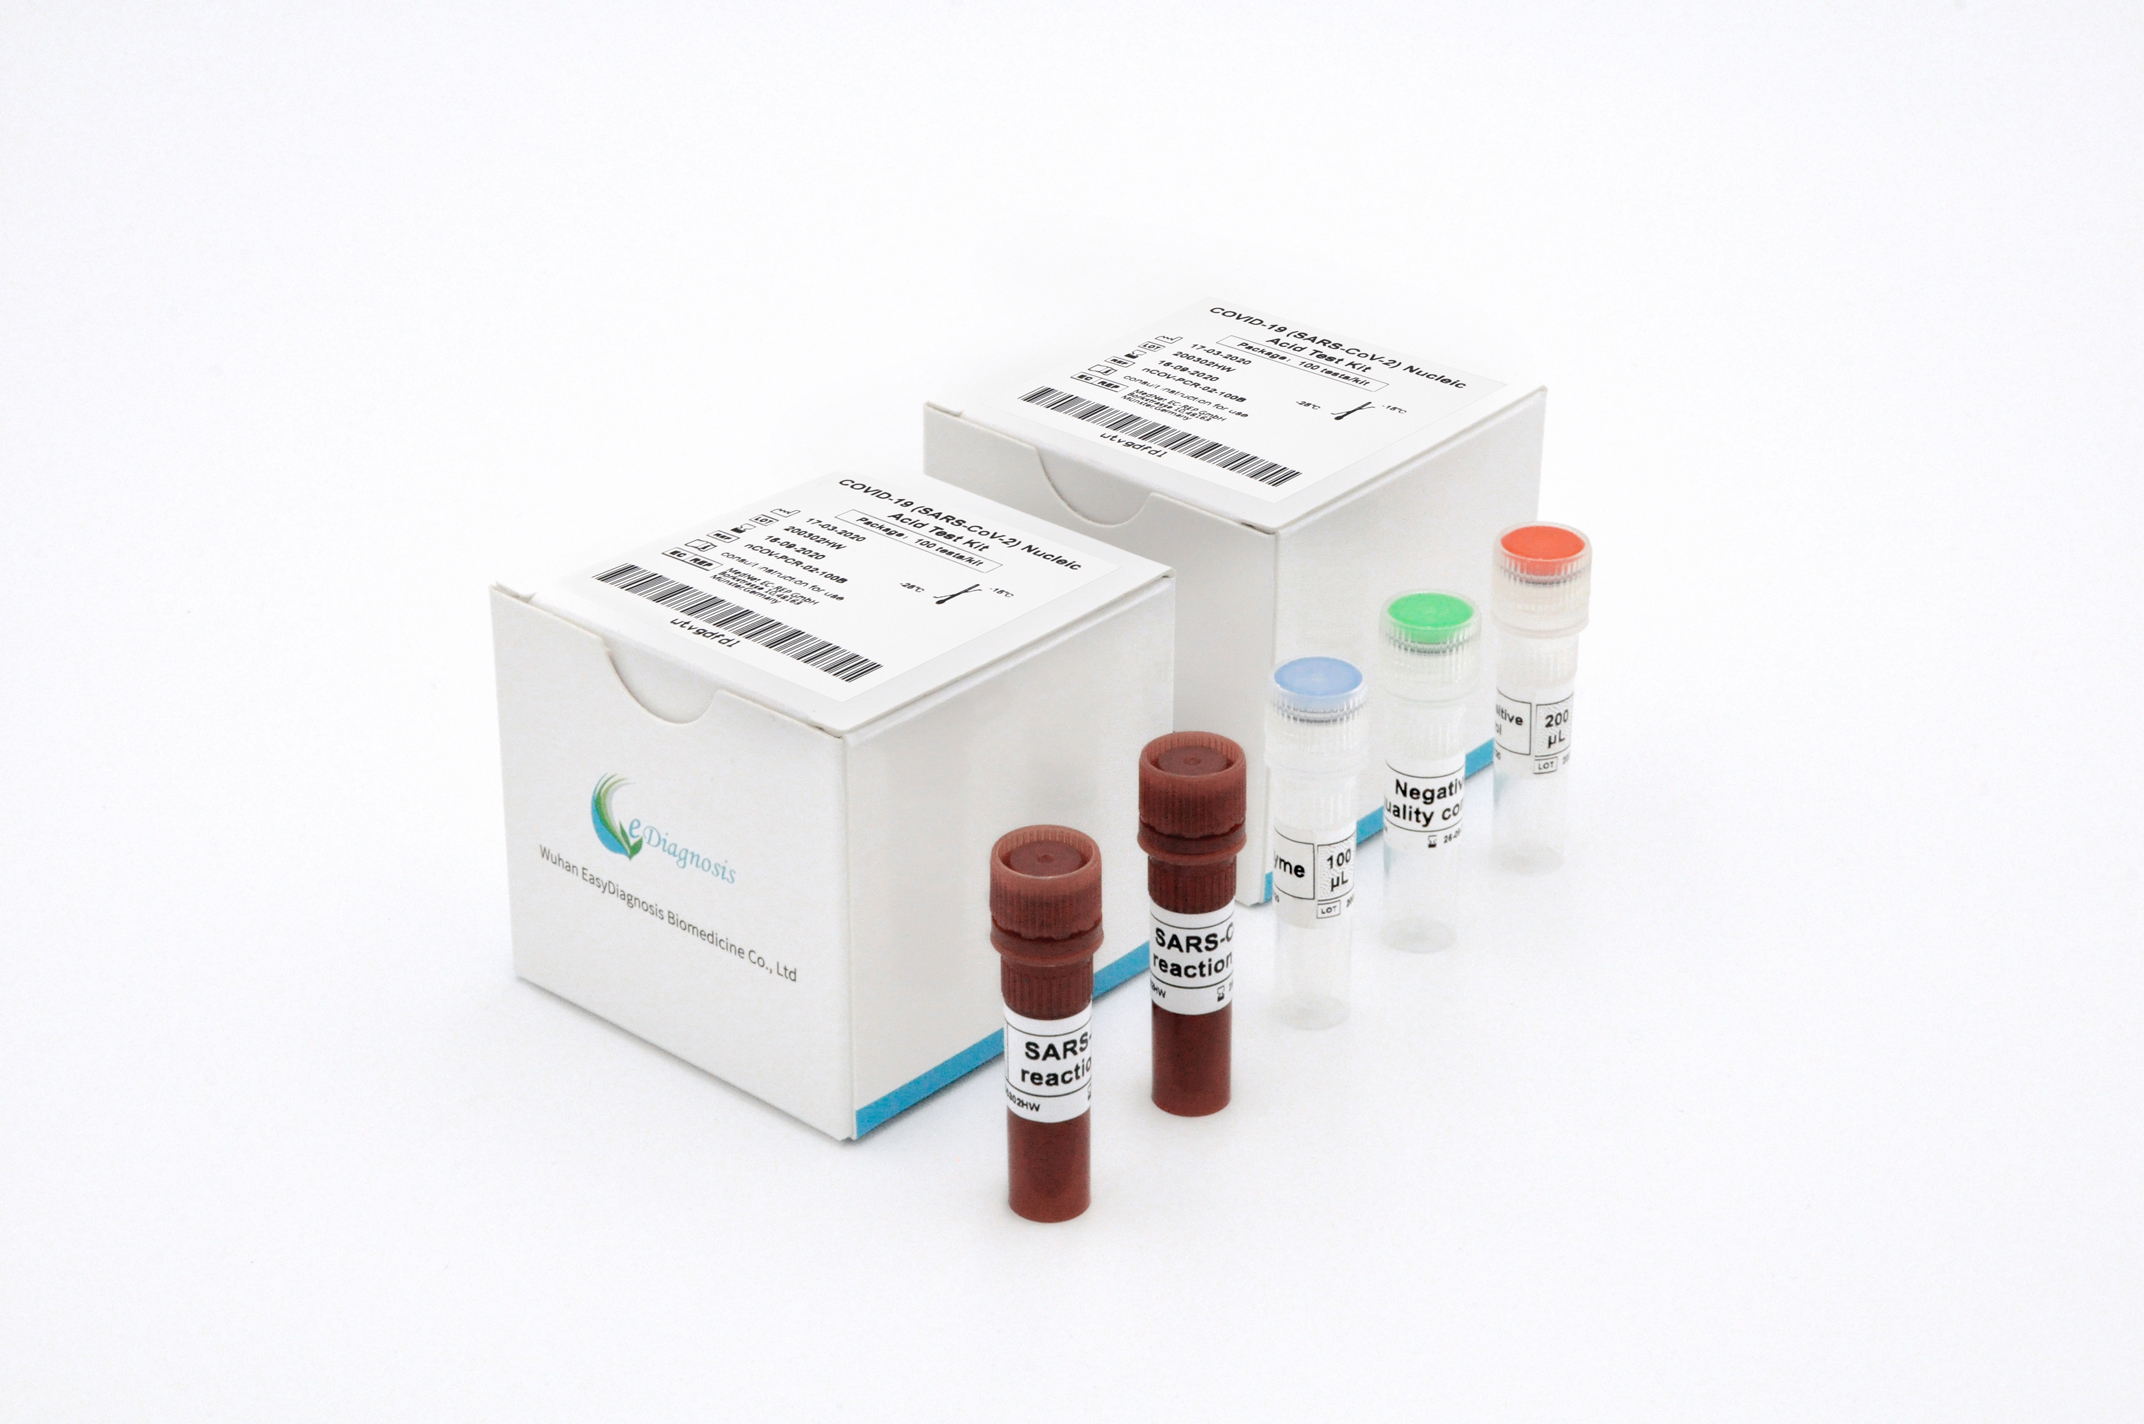 【明德】新型冠状病毒2019-nCoV核酸检测试剂盒(荧光PCR法) / 大包装:25人份/盒、50人份/盒、100人份/盒。单管单人份包装:25人份/盒、50人份/盒、100人份/盒-云医购